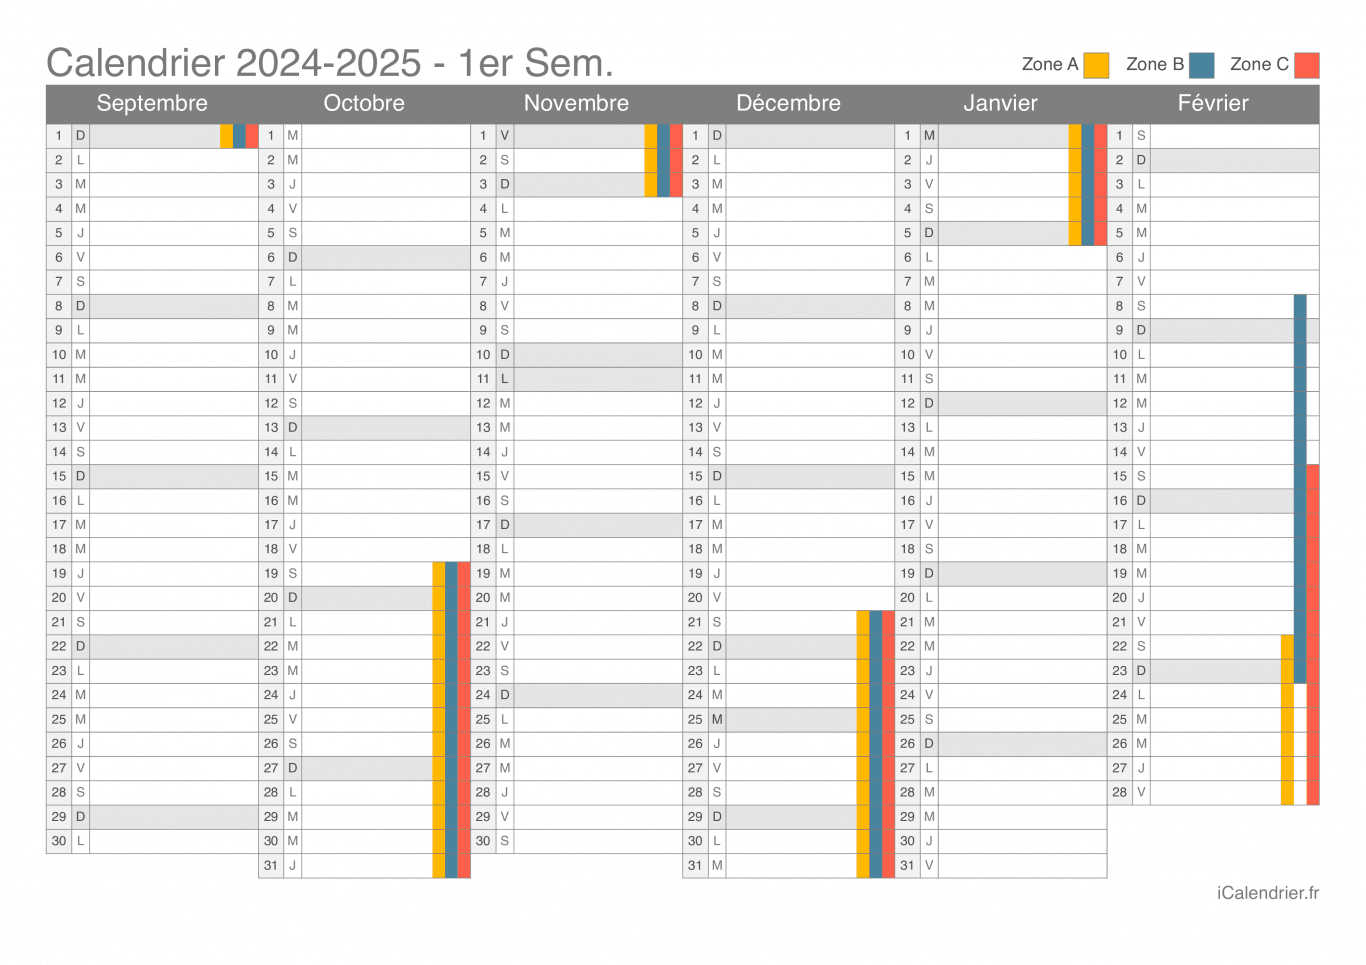 Calendrier des vacances scolaires 2024-2025 par semestre